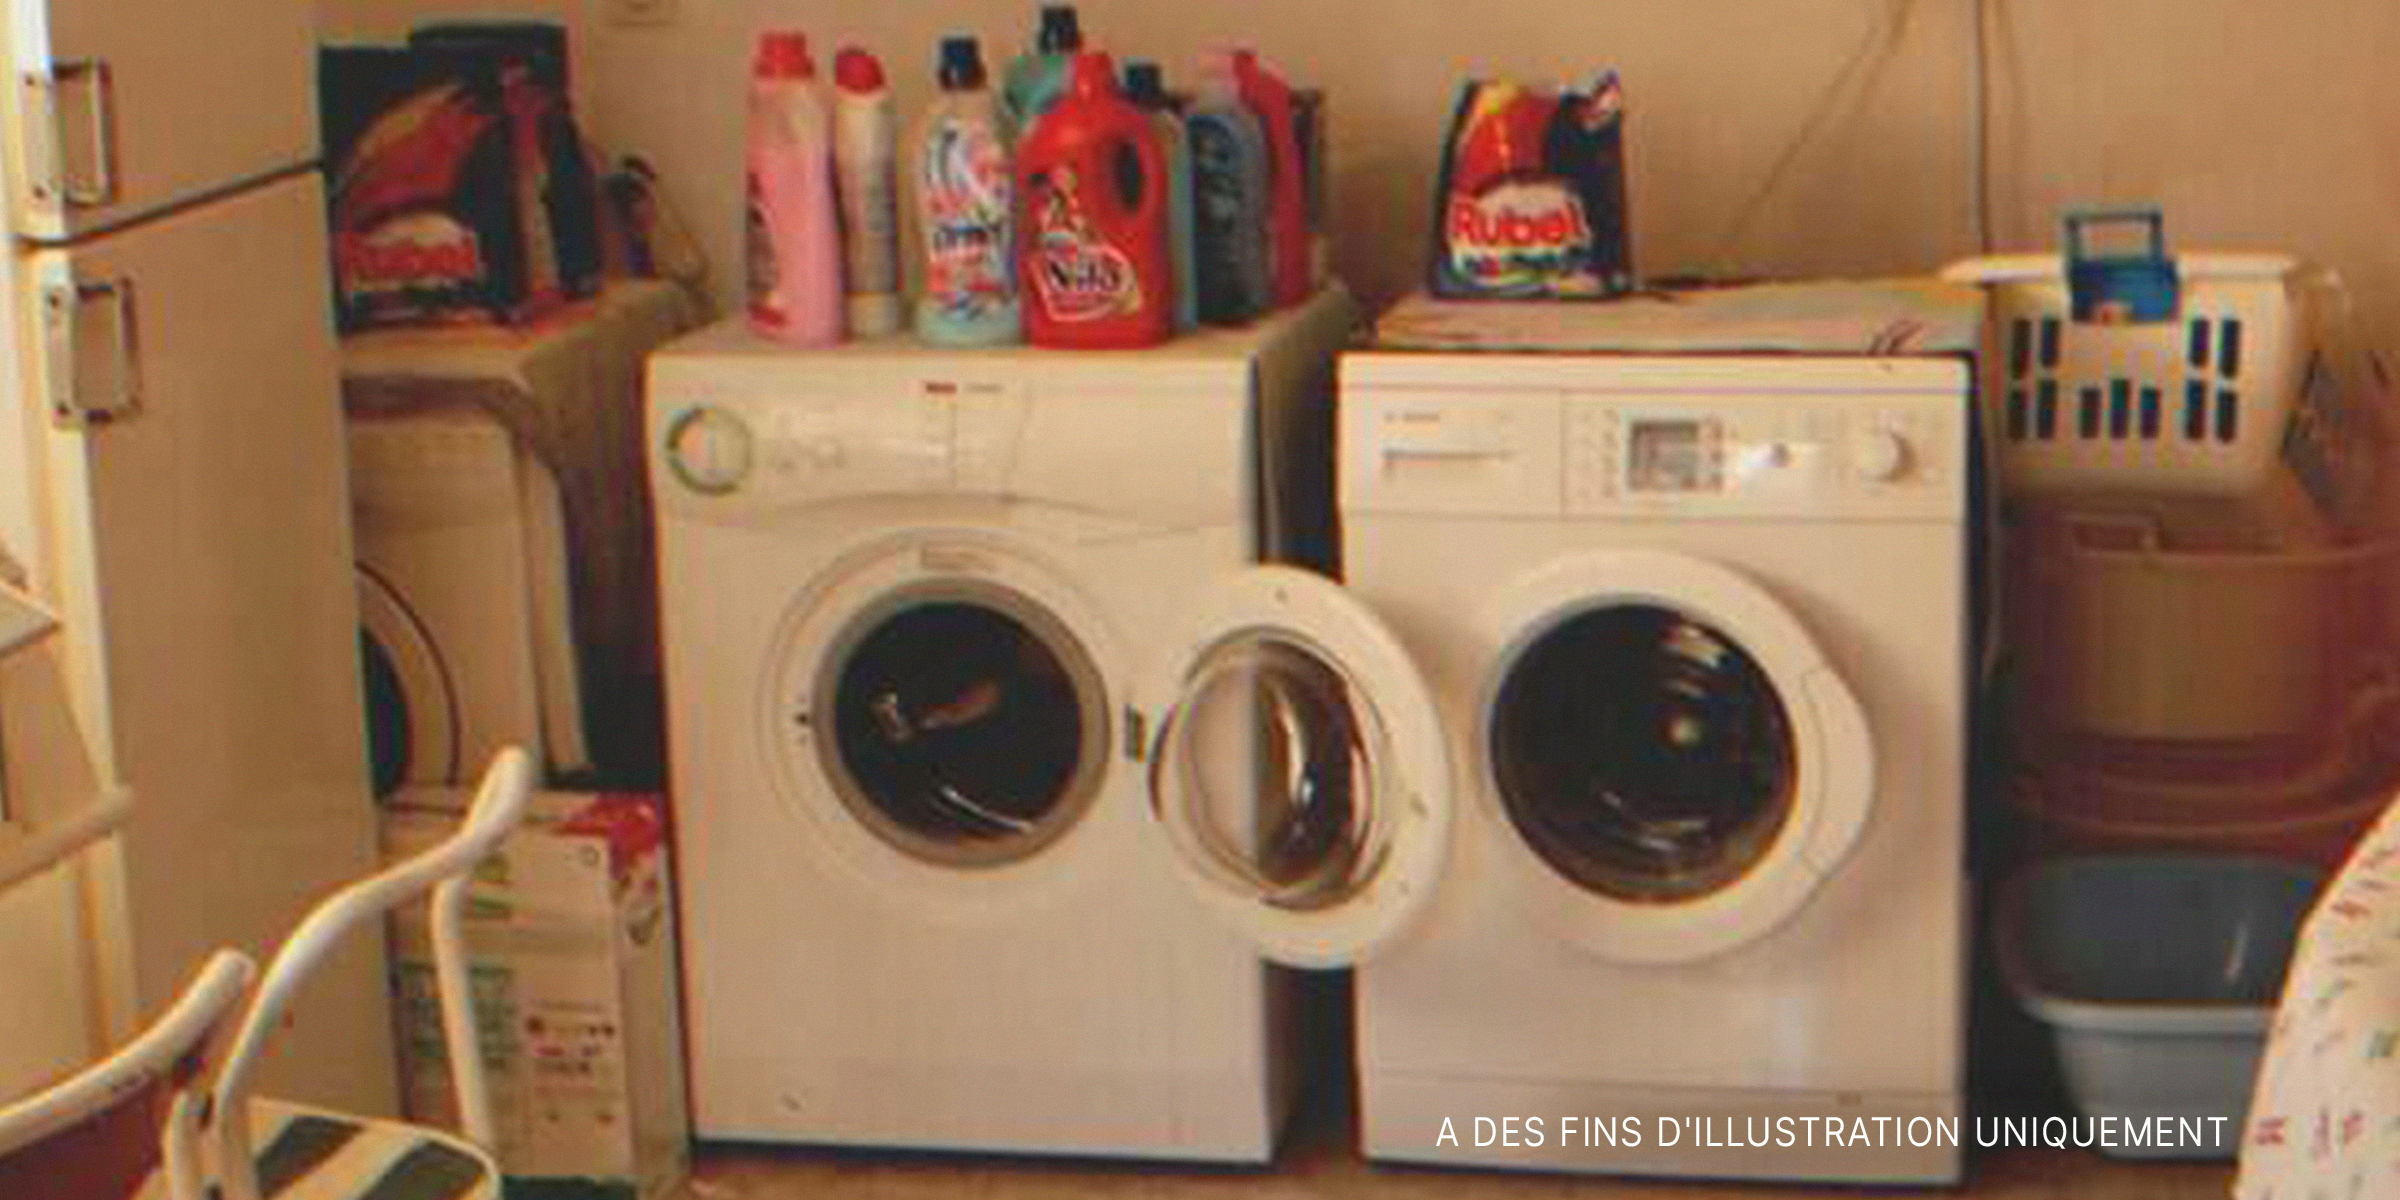 Des machines à laver avec des bouteilles de détergent dessus. | Source : Flickr / auxesis (CC BY 2.0)